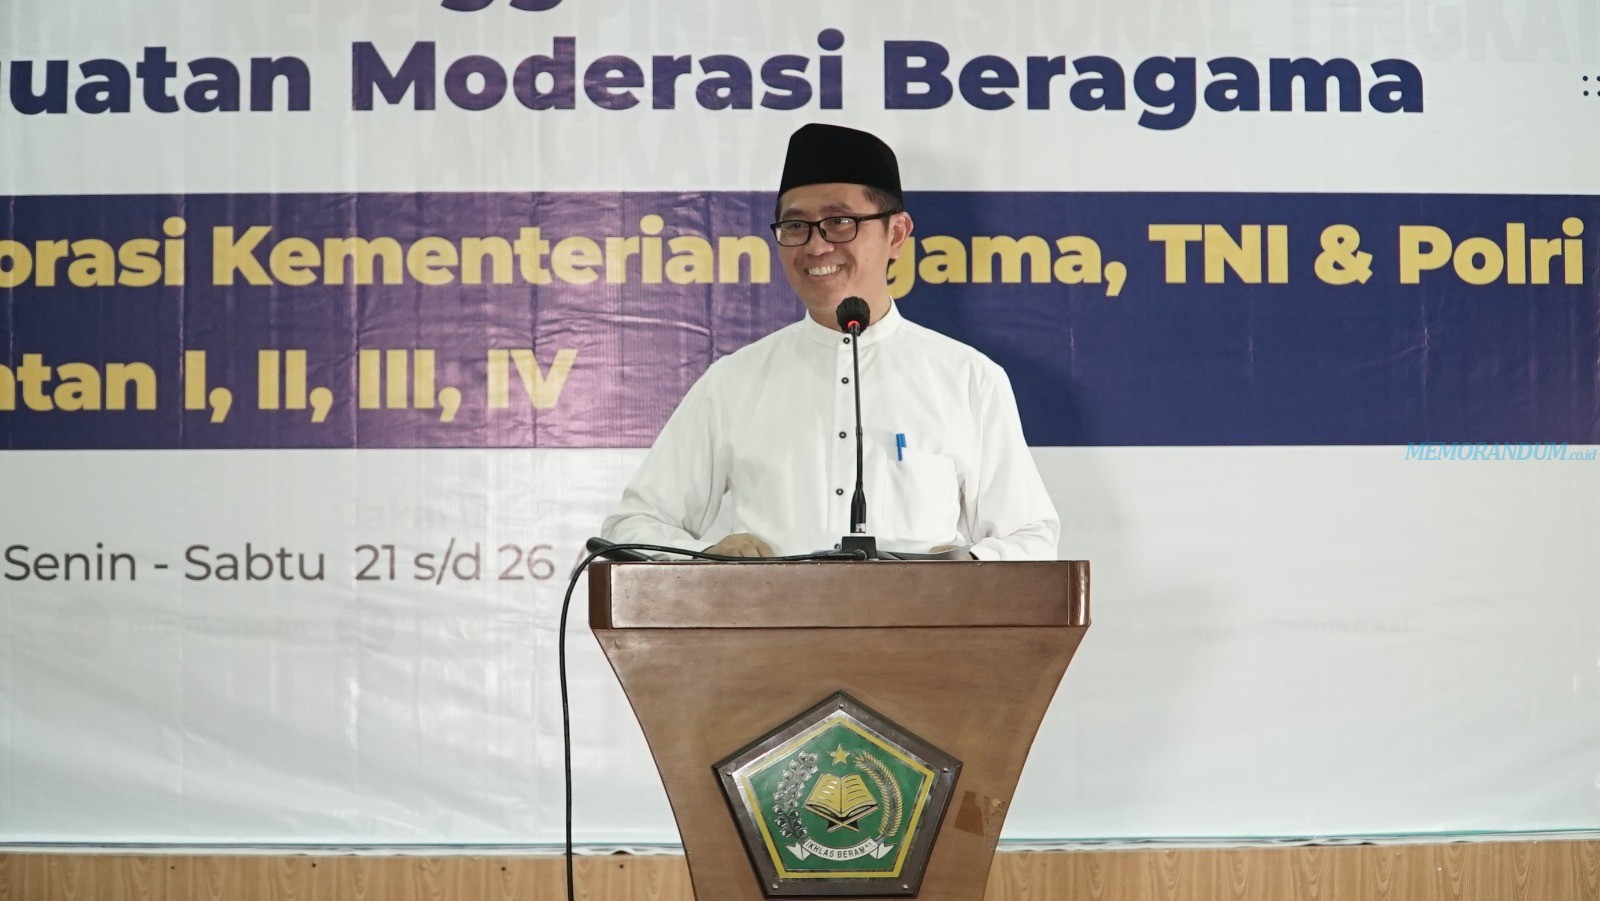 Sambut Tahun Politik, Kemenag Gandeng TNI & Polri Latih Penggerak Moderasi Beragama